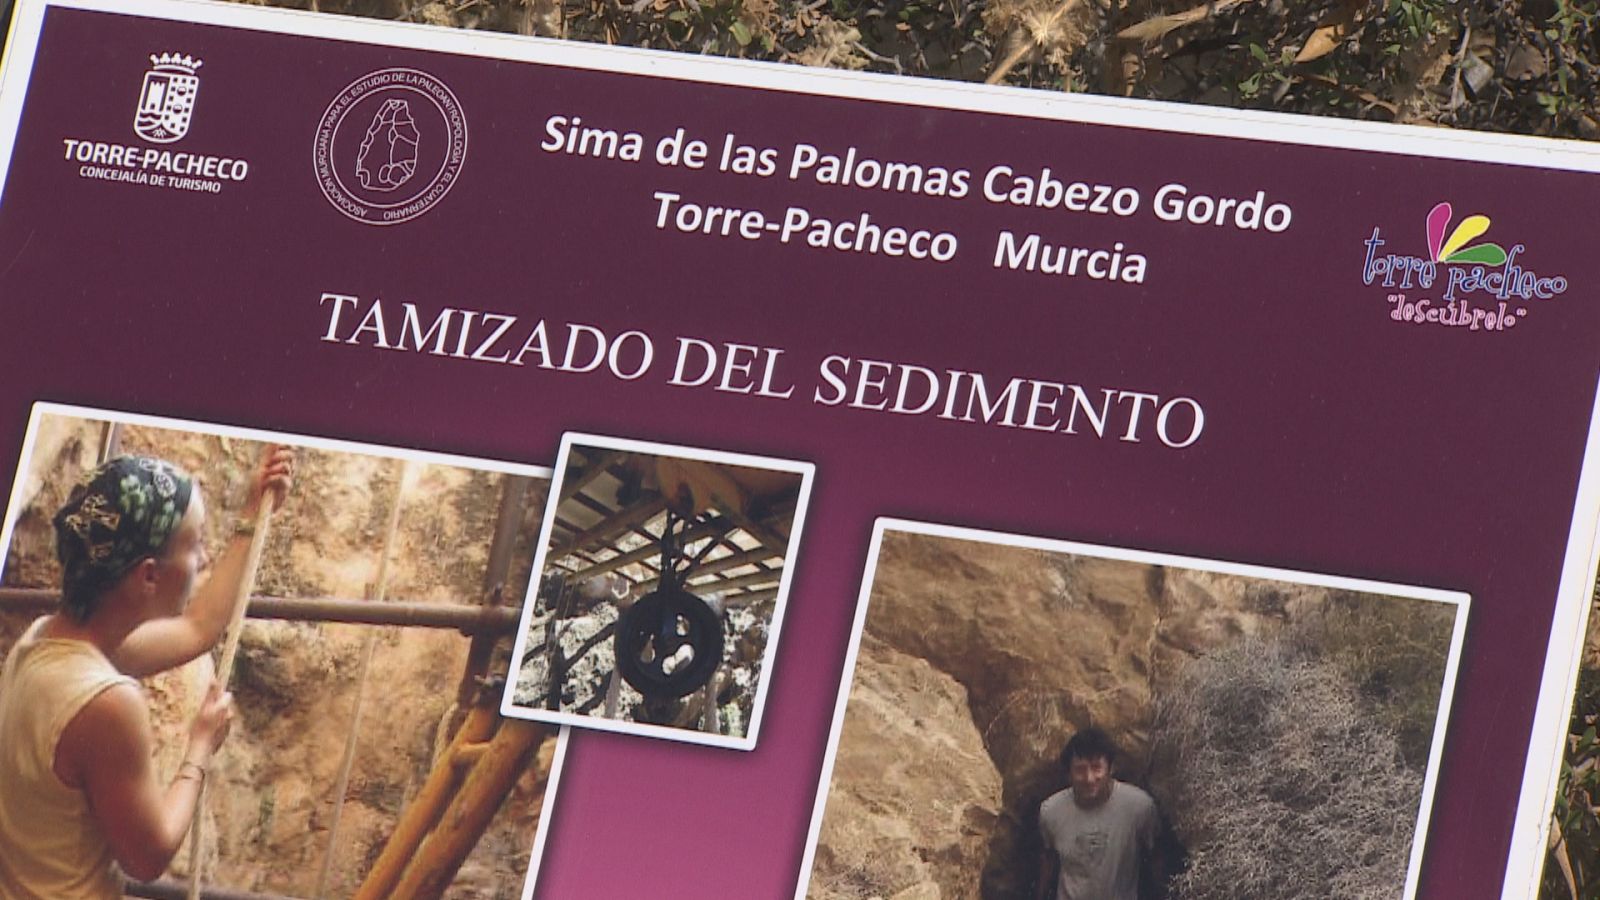 La sima de las palomas: Un yacimiento prehistórico referente a nivel mundial